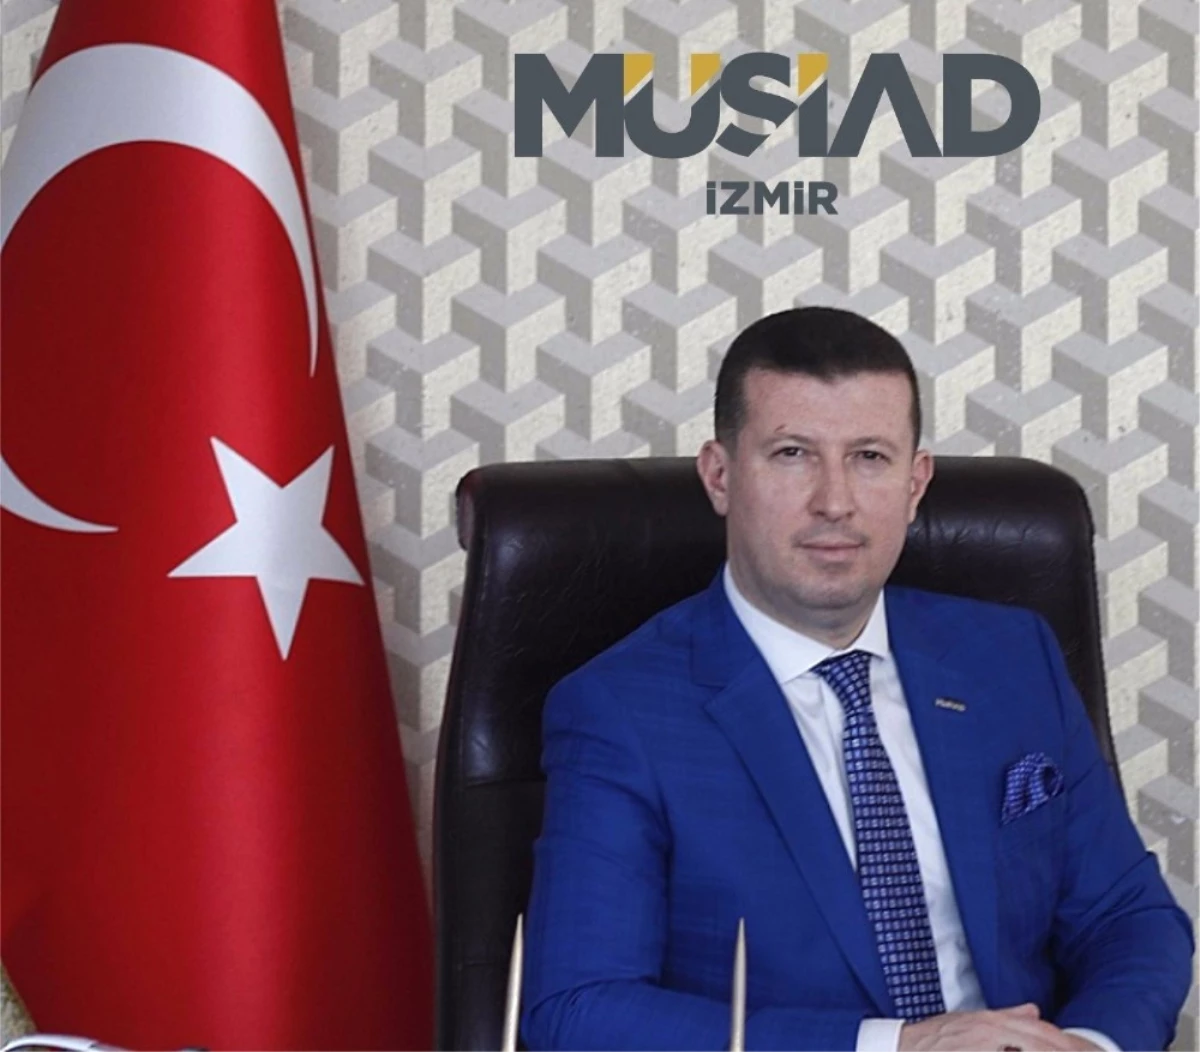 Müsiad İzmir Başkanı Ülkü, "Türkiye\'de Yeni Bir Dönem Başladı"